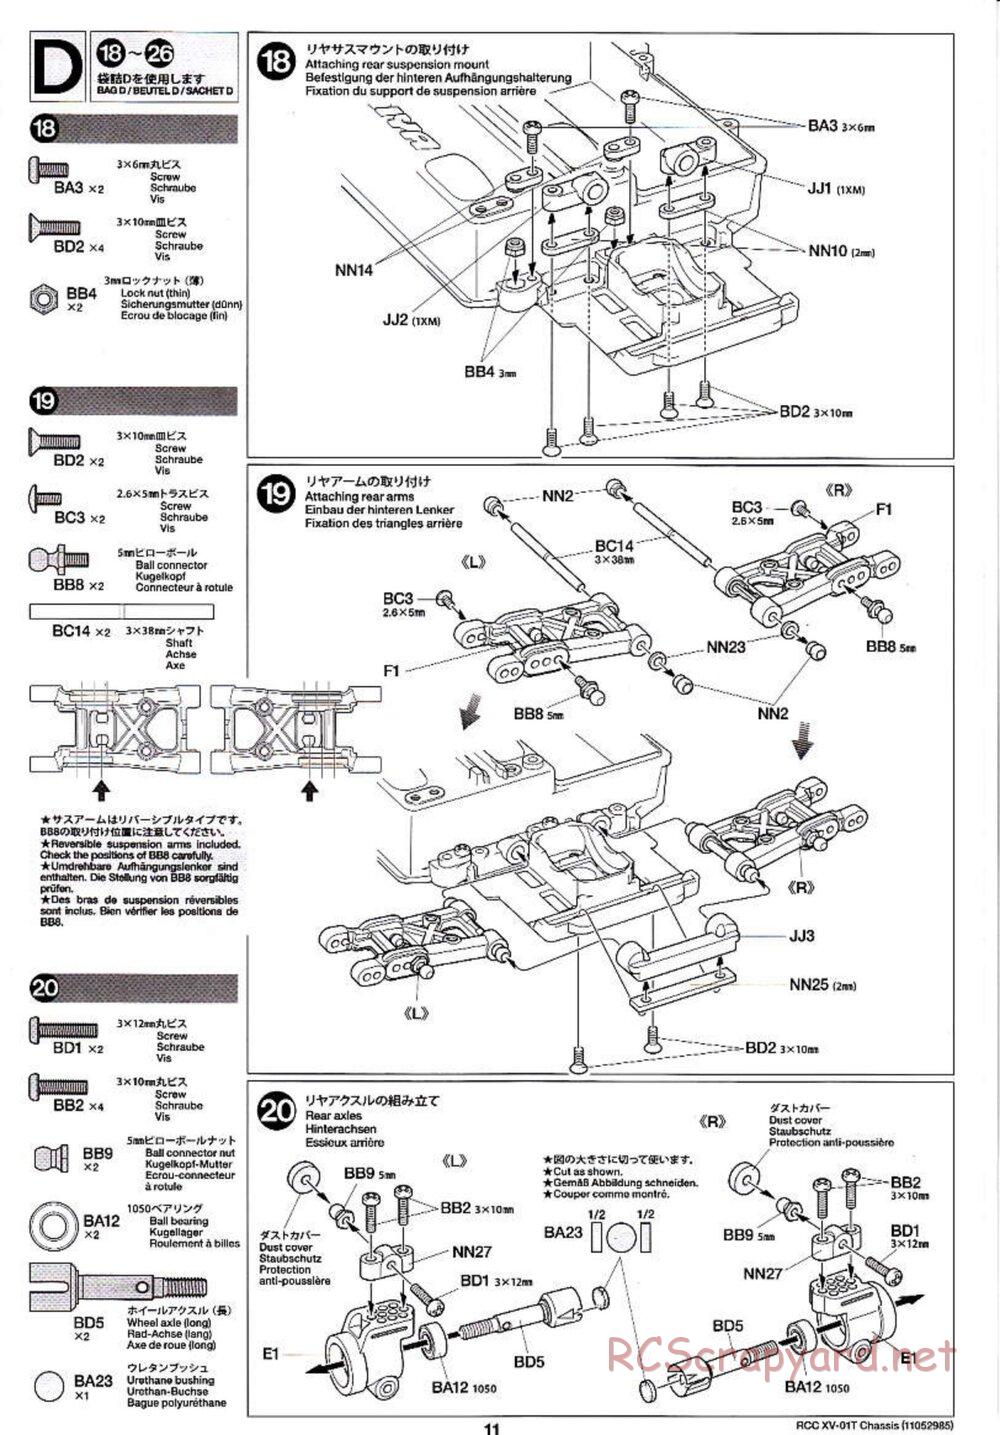 Tamiya - XV-01T Chassis - Manual - Page 11